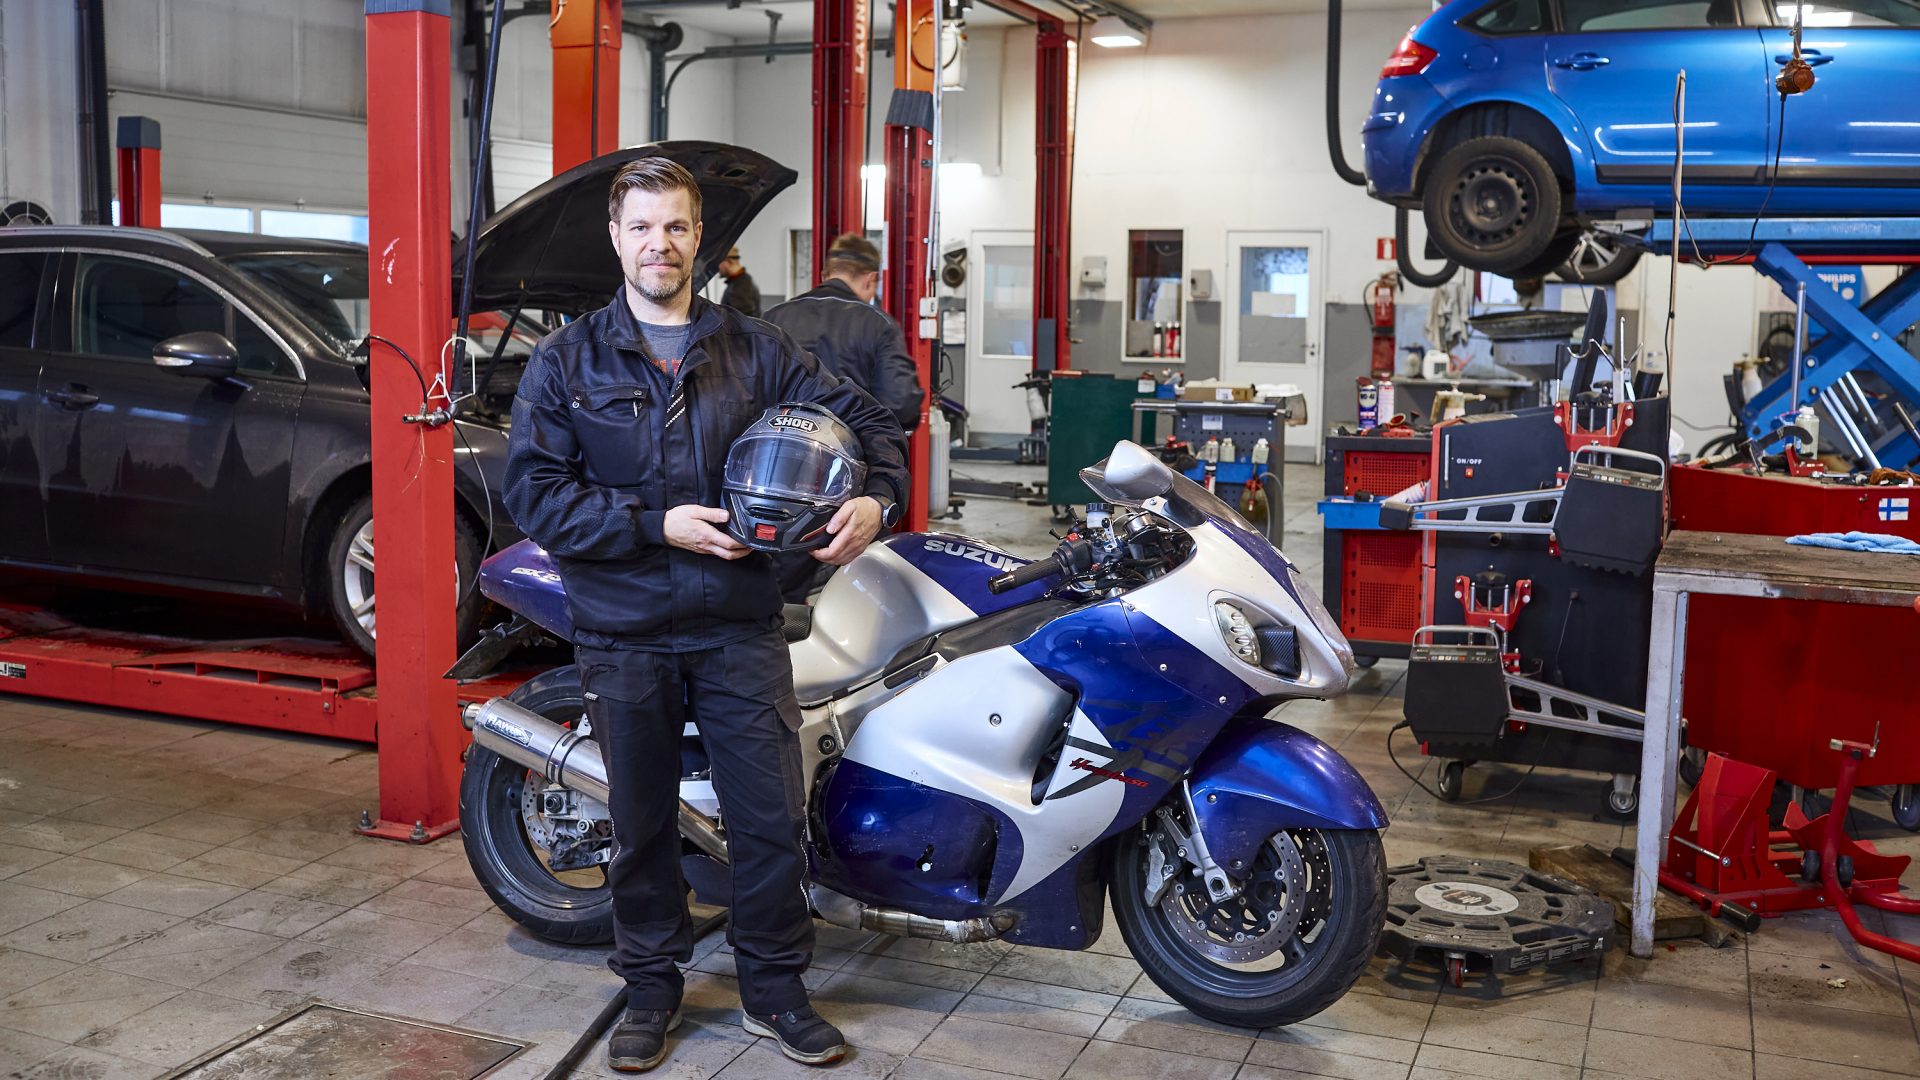 Auto-France's CEO Jarno Valkonen in their garage